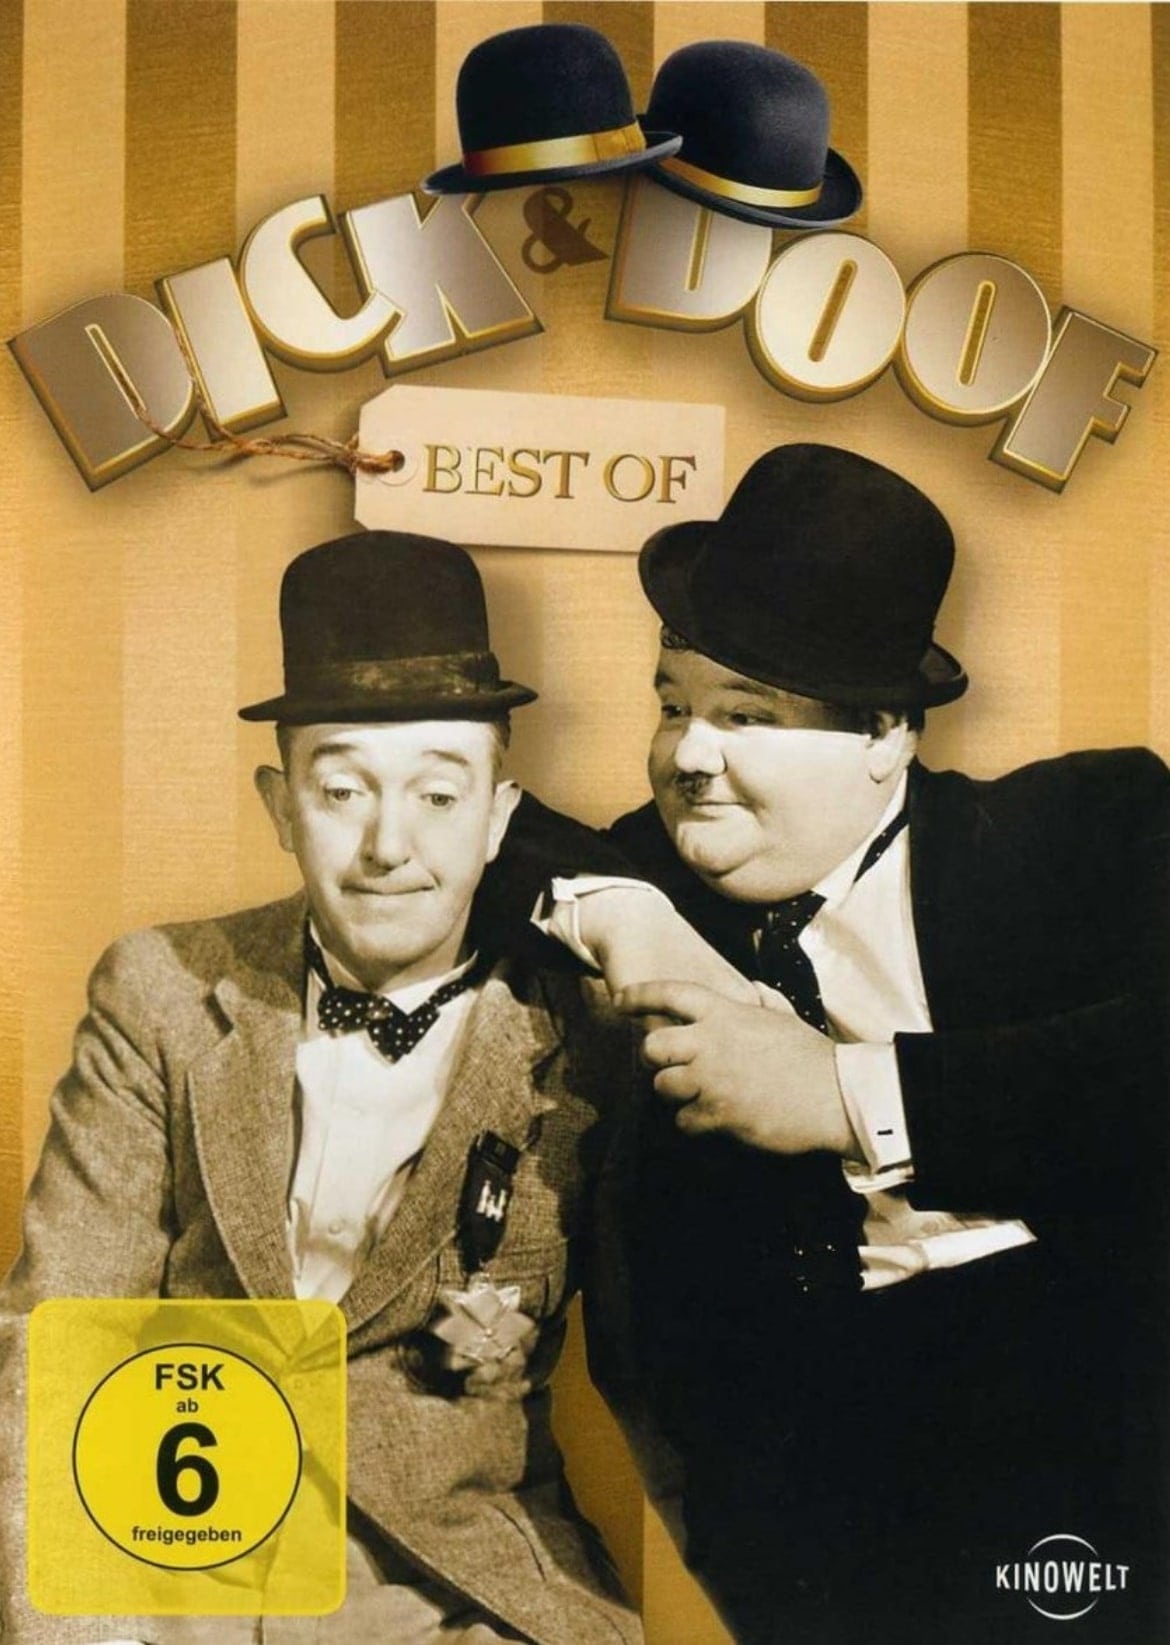 Dick & Doof - Best of